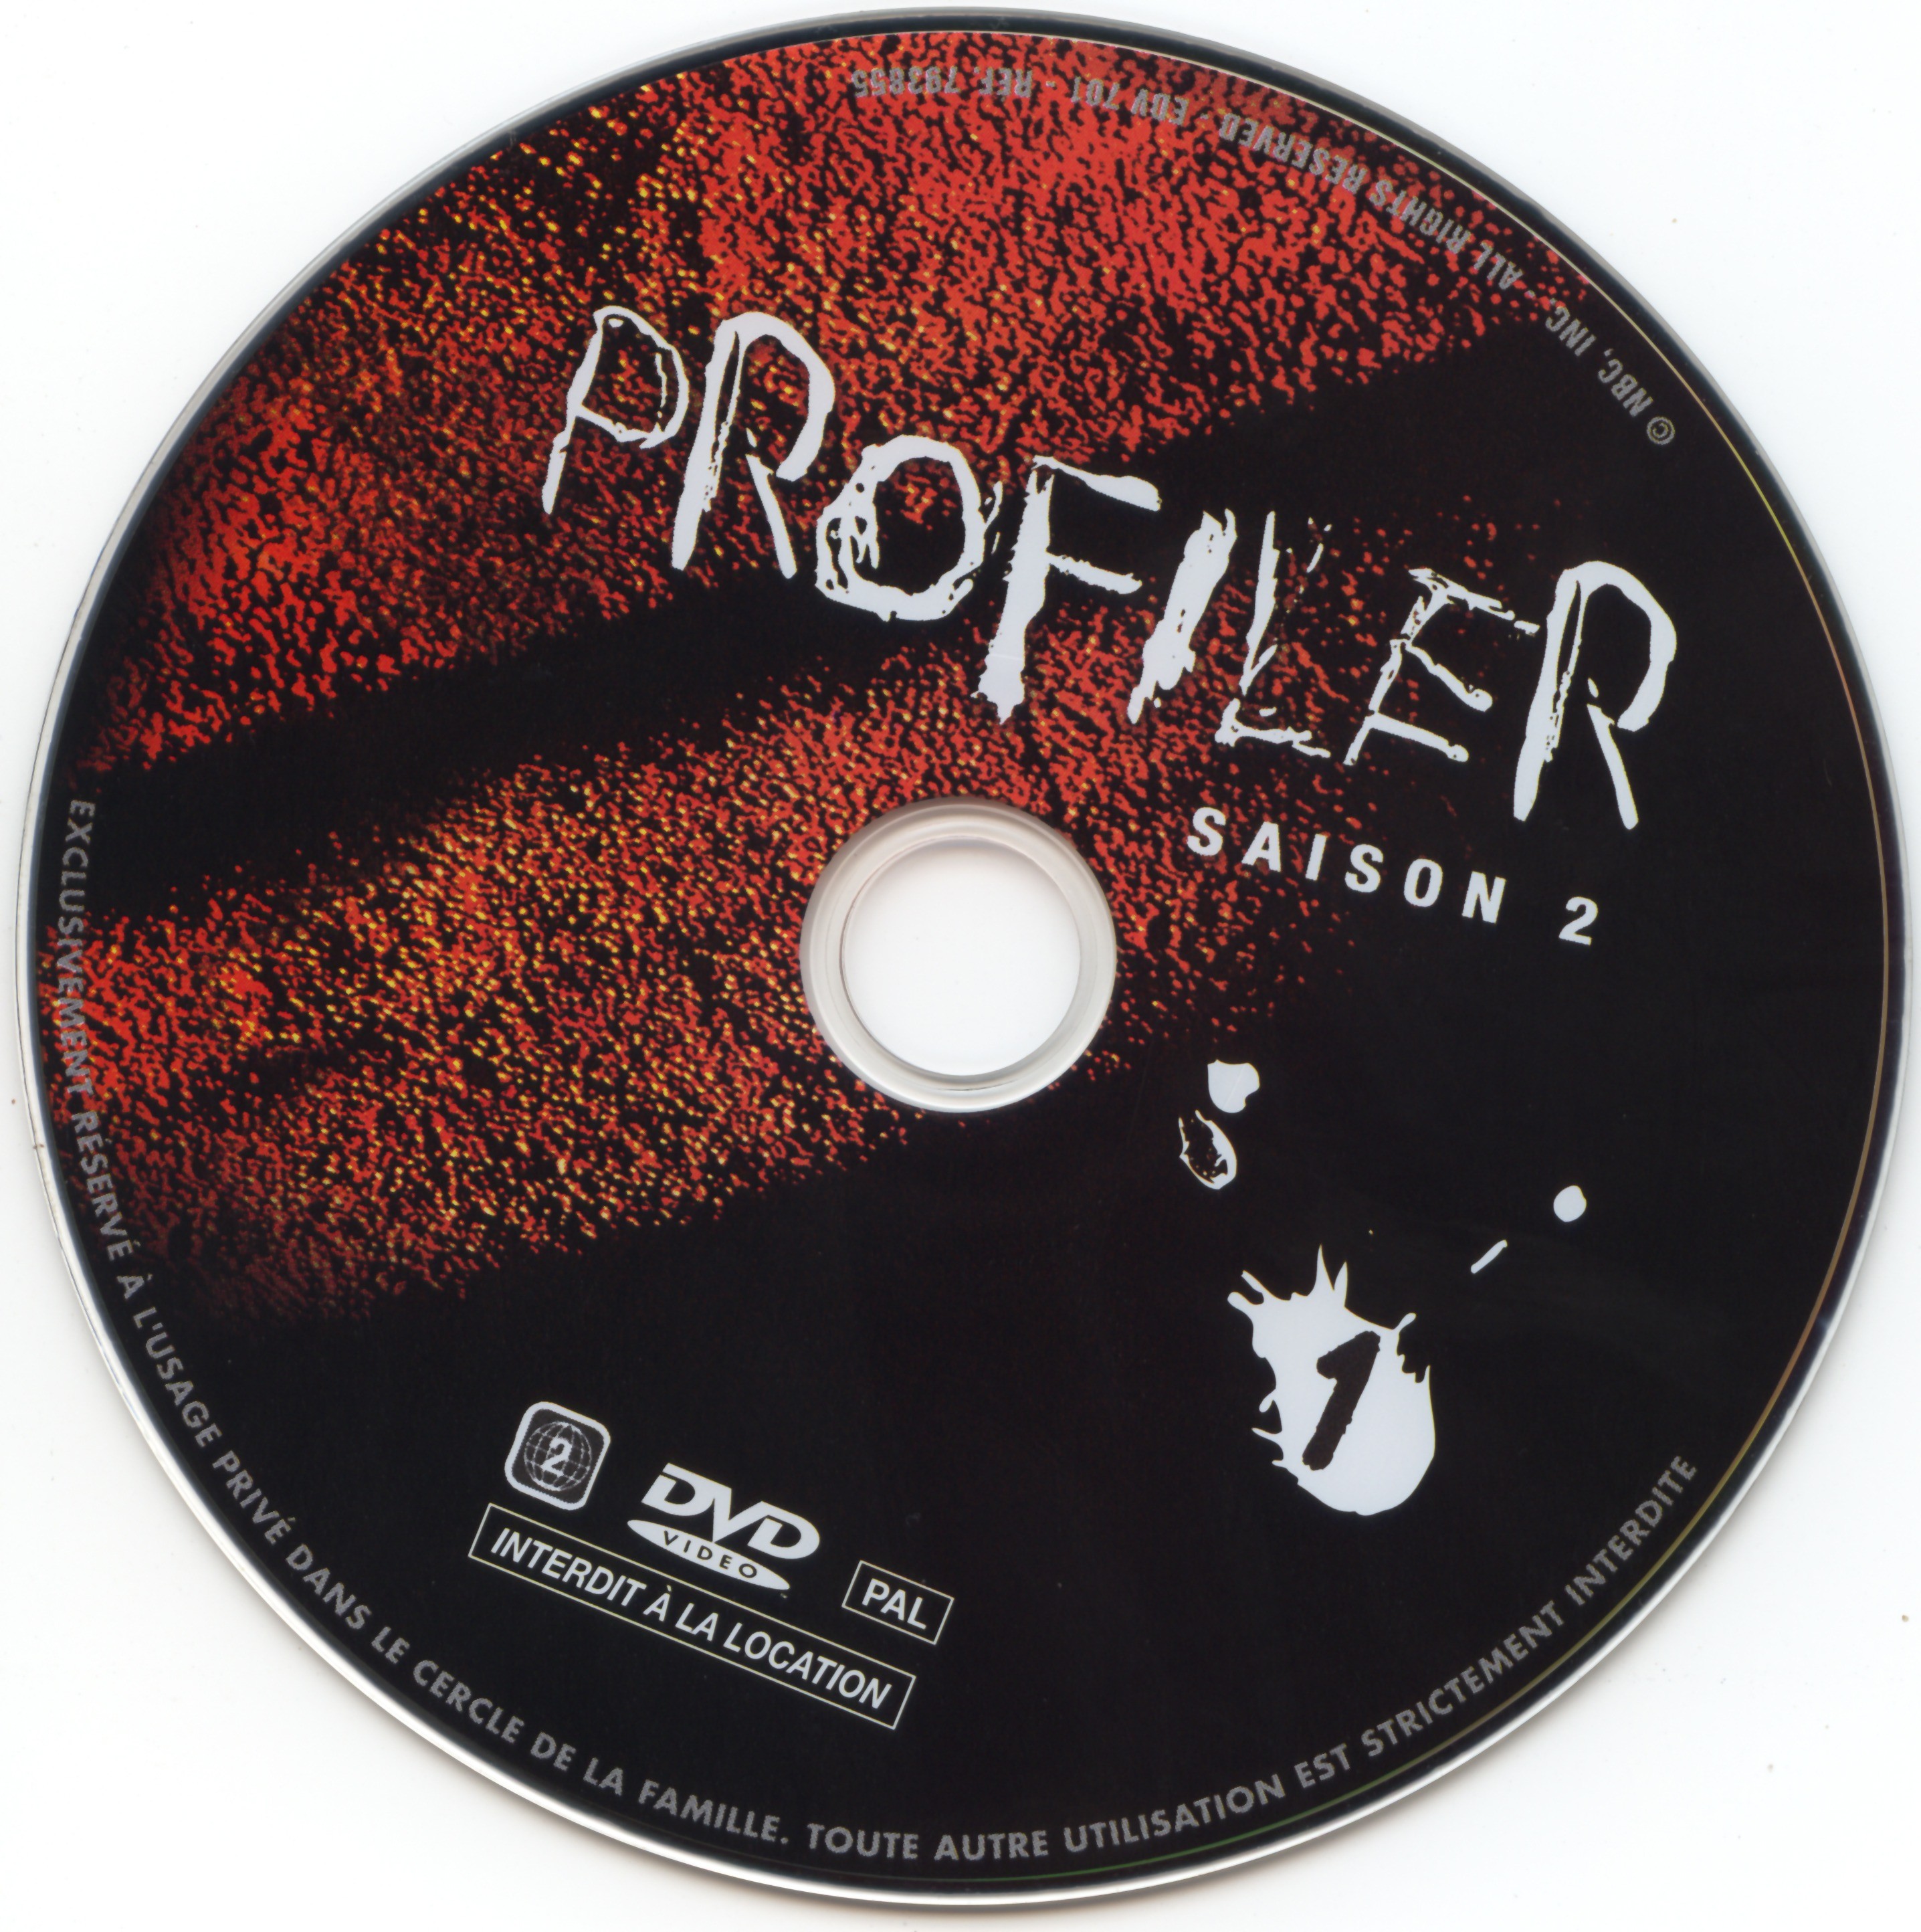 Profiler saison 2 DVD 1